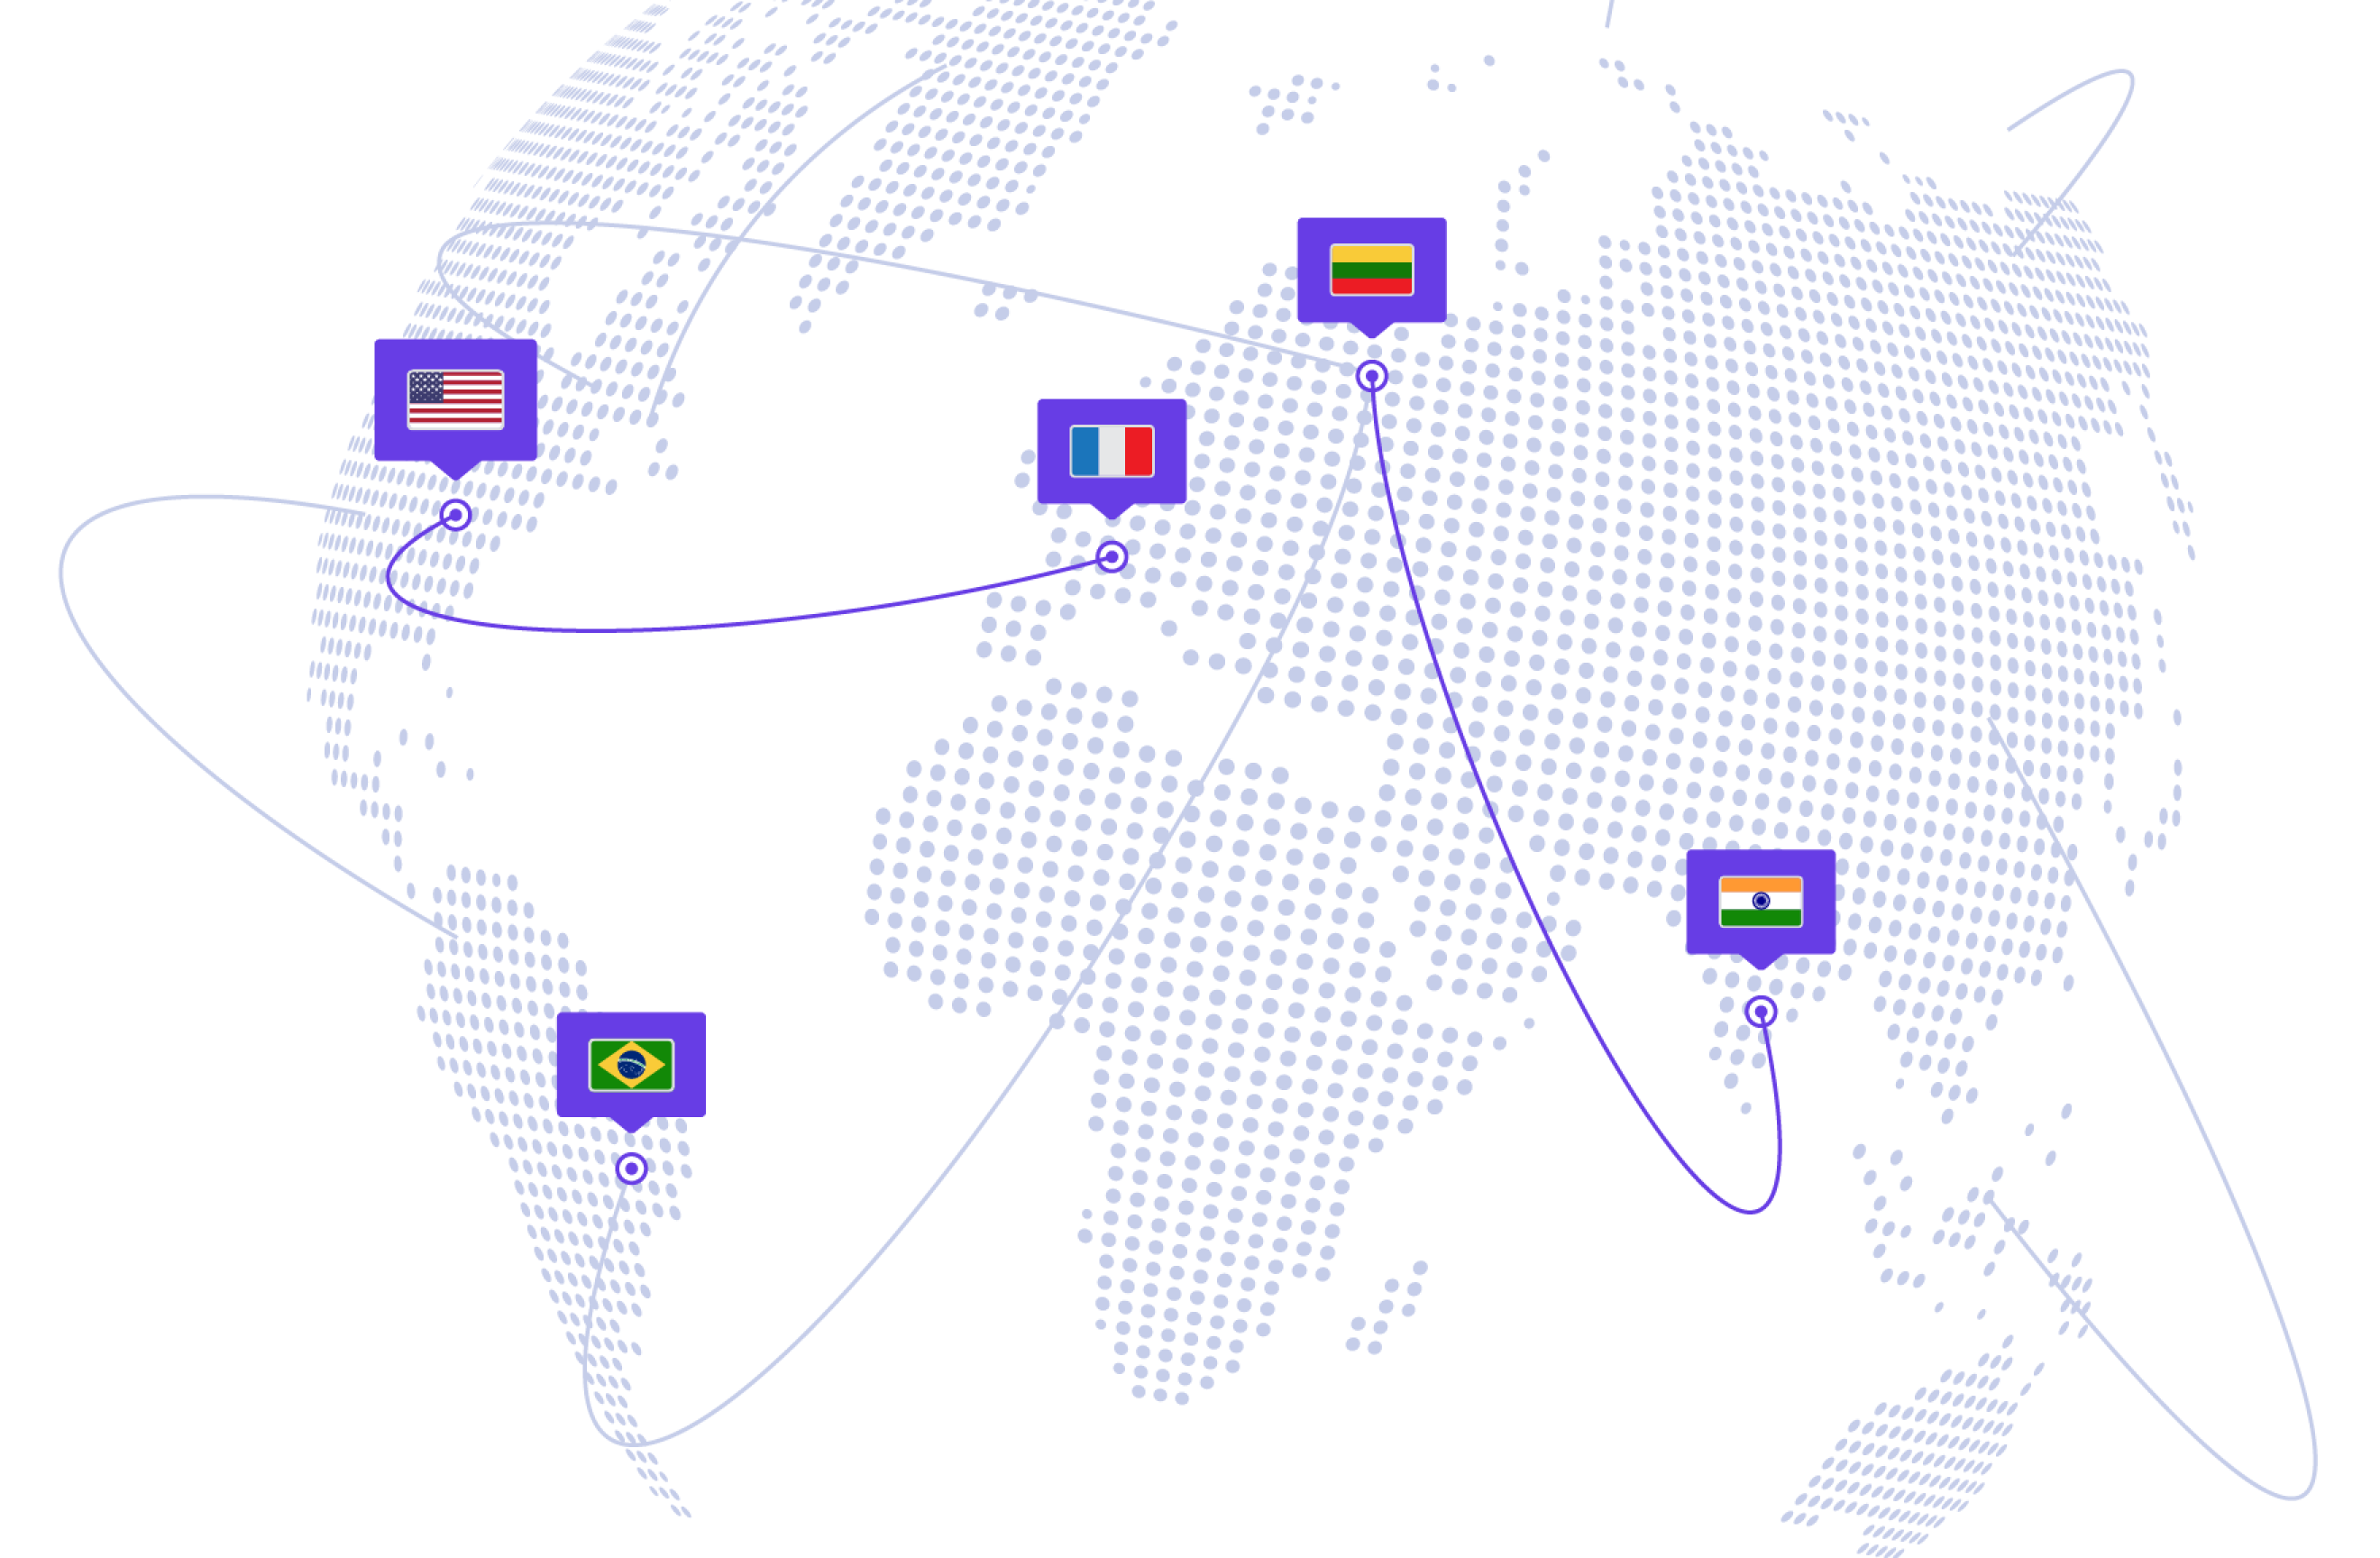 Global data center network